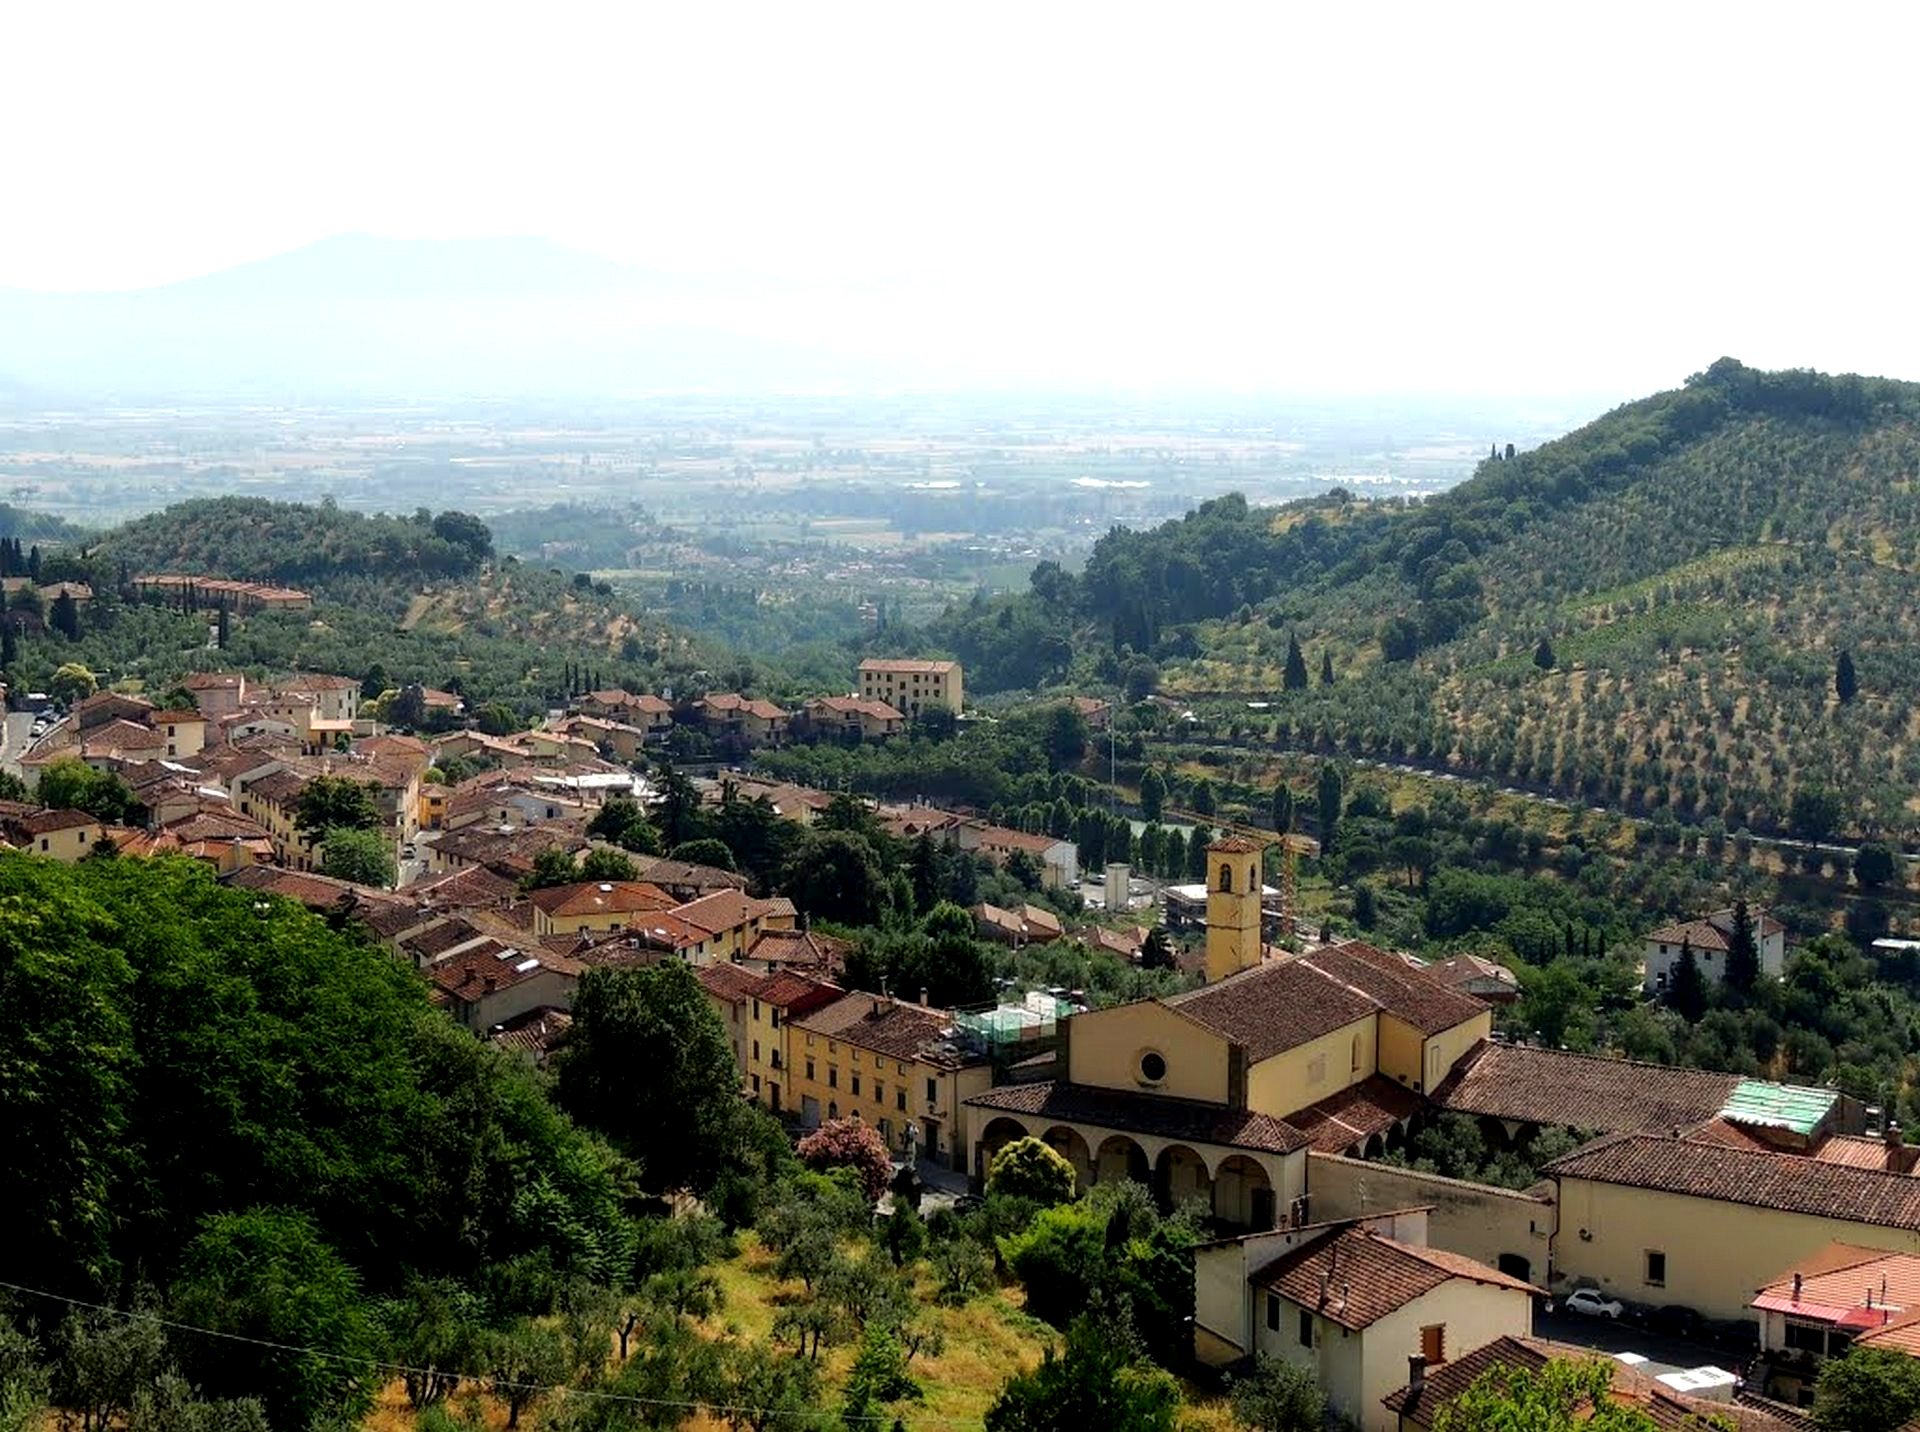 Rocca of Carmignano